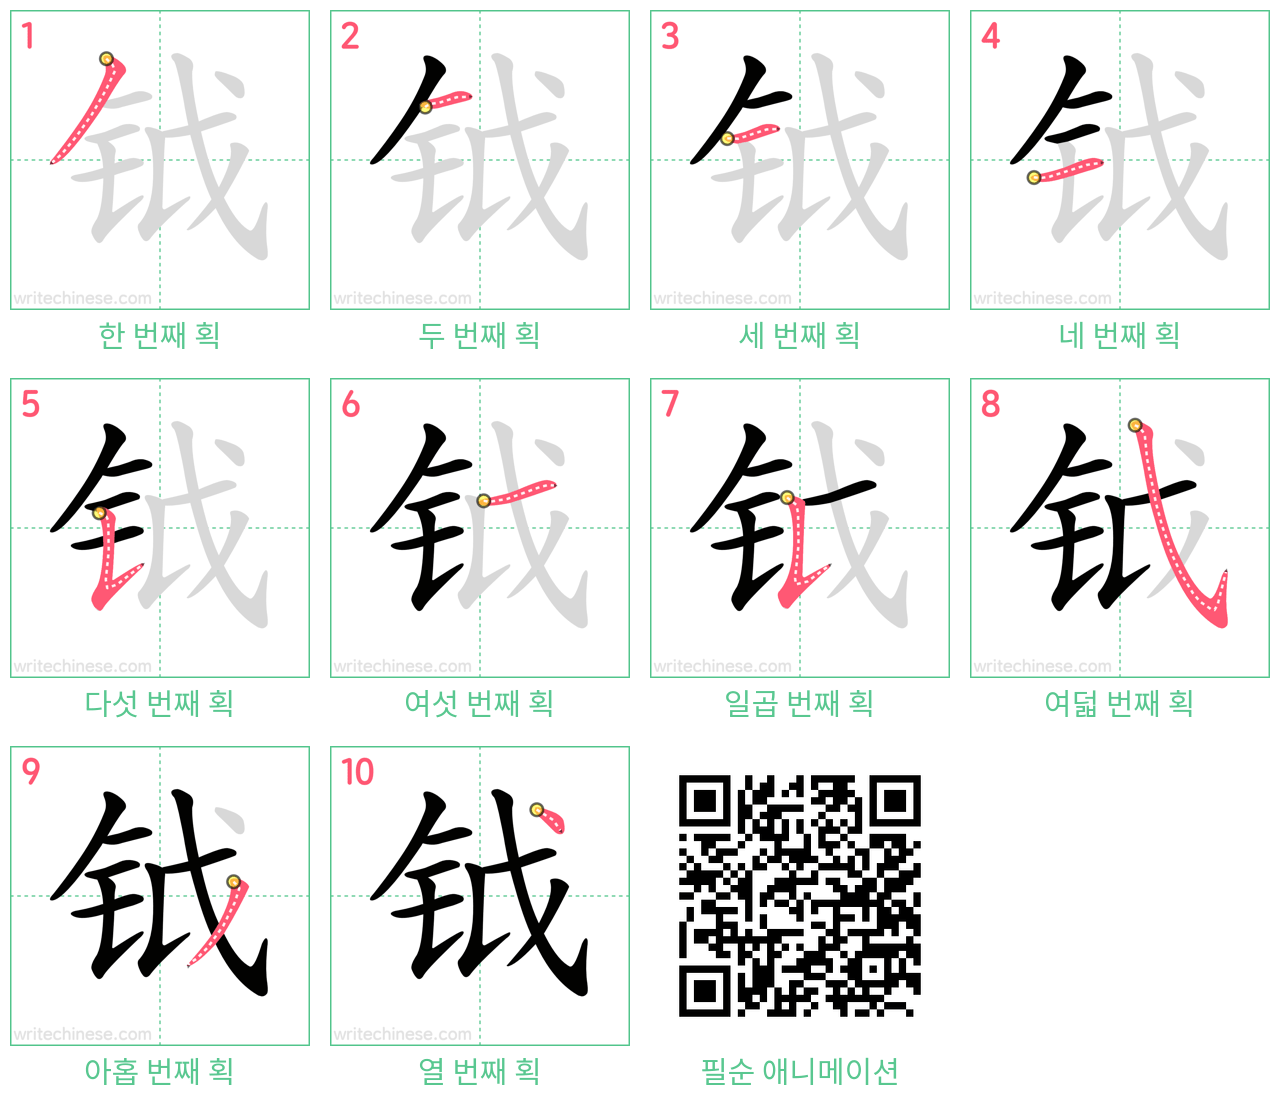 钺 step-by-step stroke order diagrams